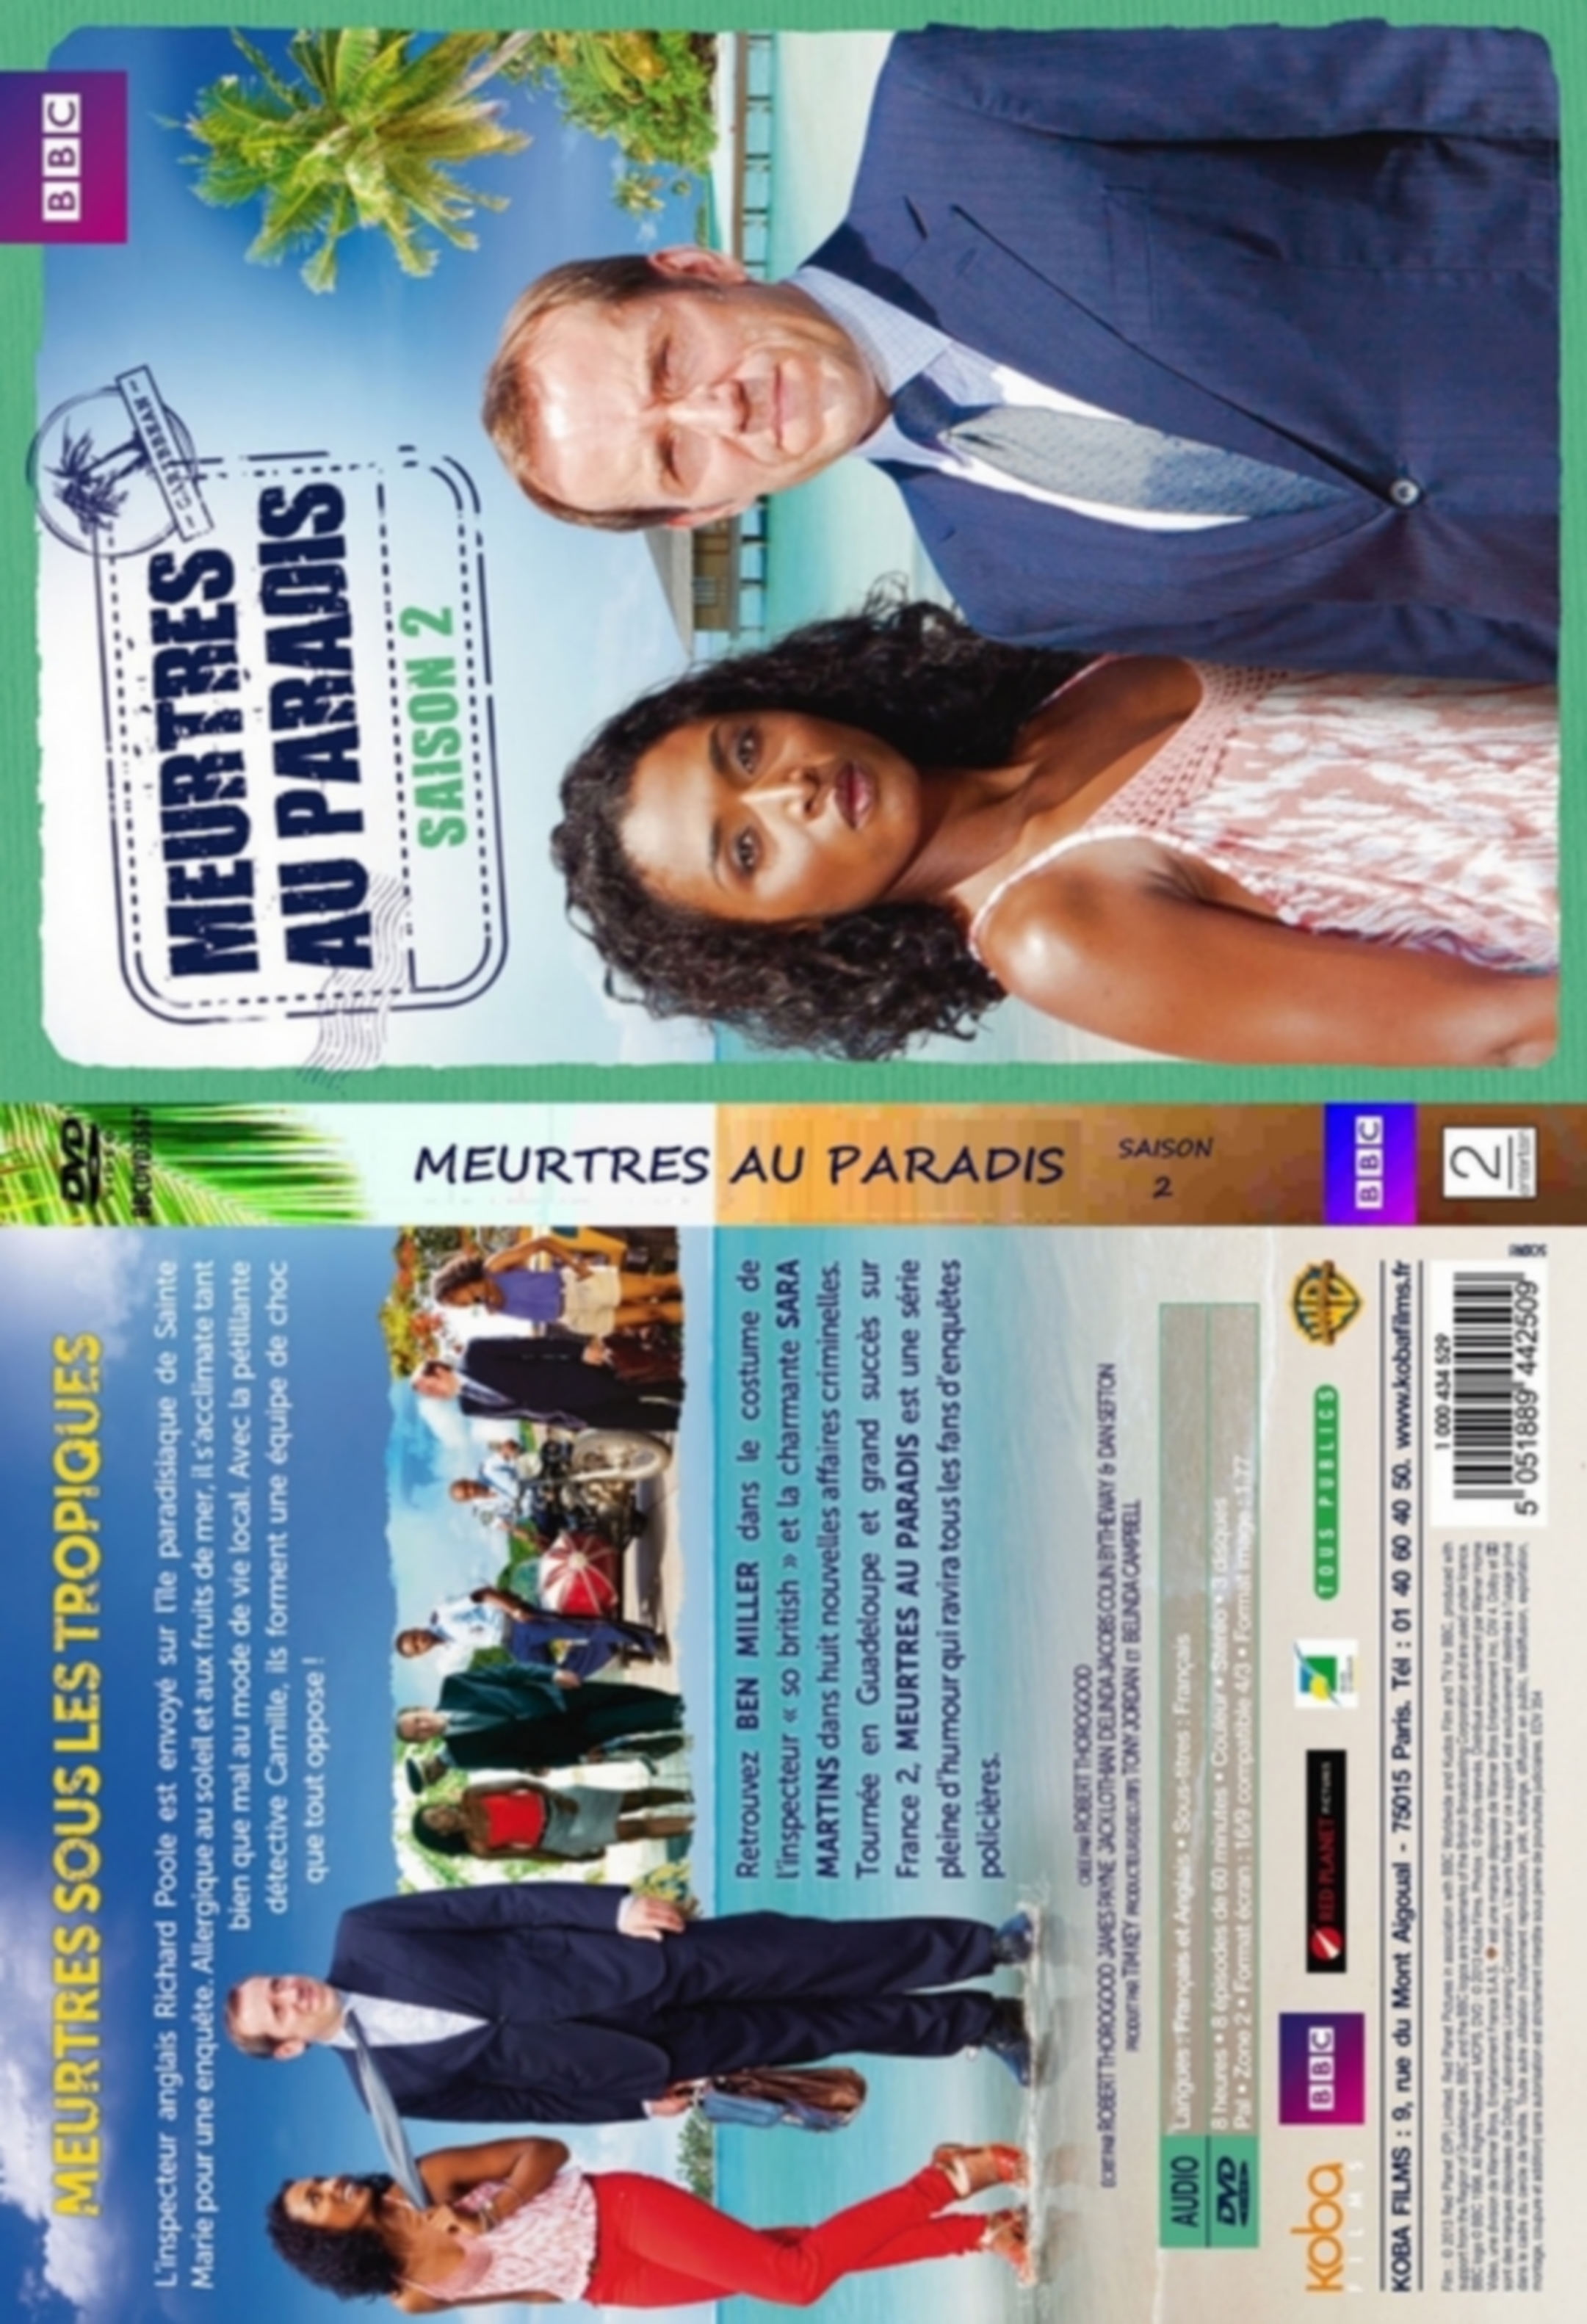 Jaquette DVD Meurtres au Paradis 2 - SLIM